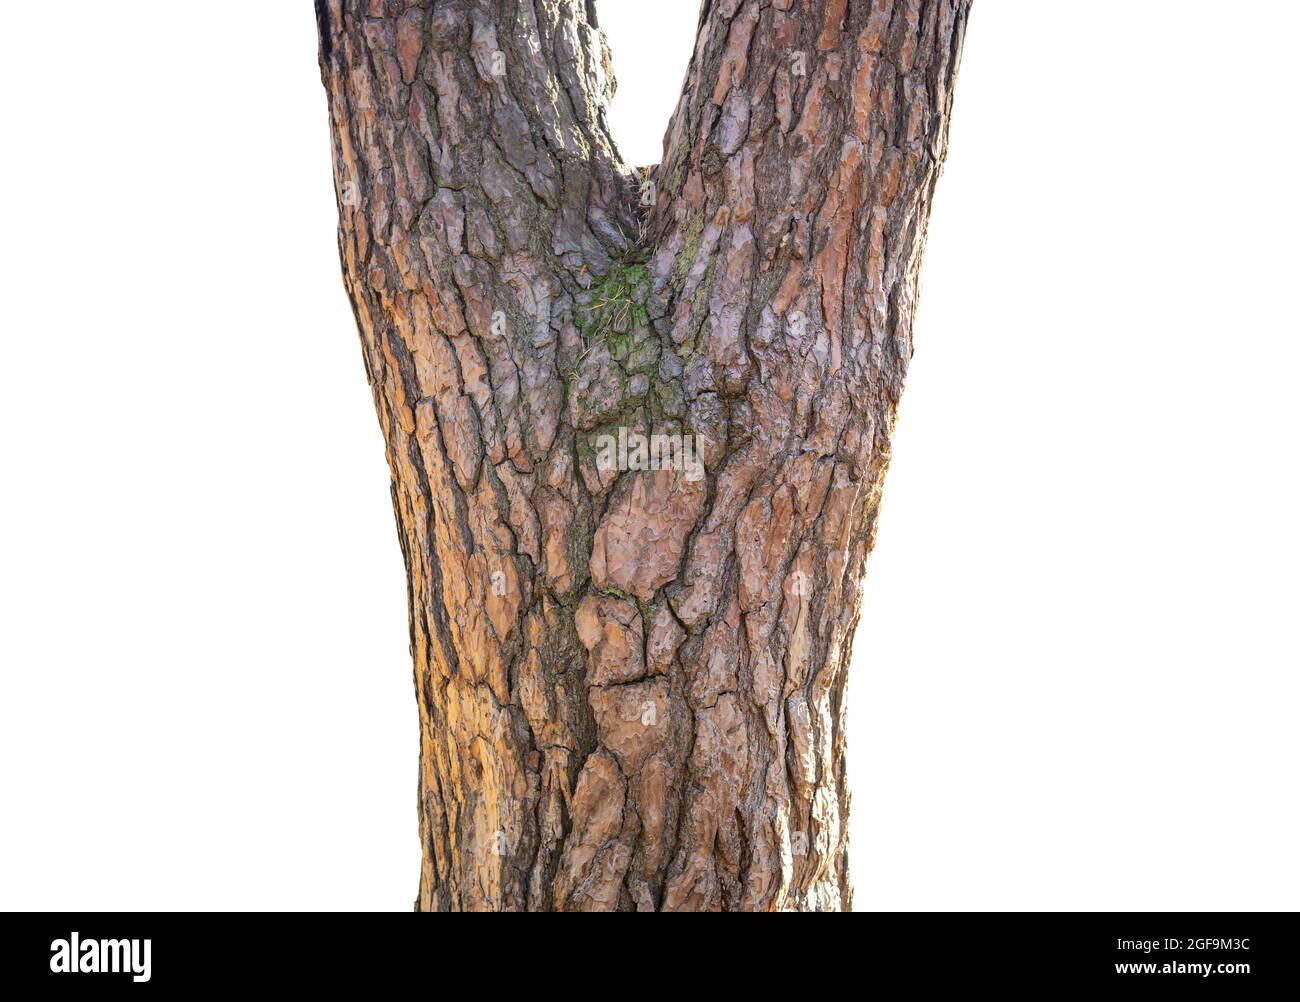 Tronc d'arbre avec un motif d'écorce ressemblant à un visage humain Banque D'Images